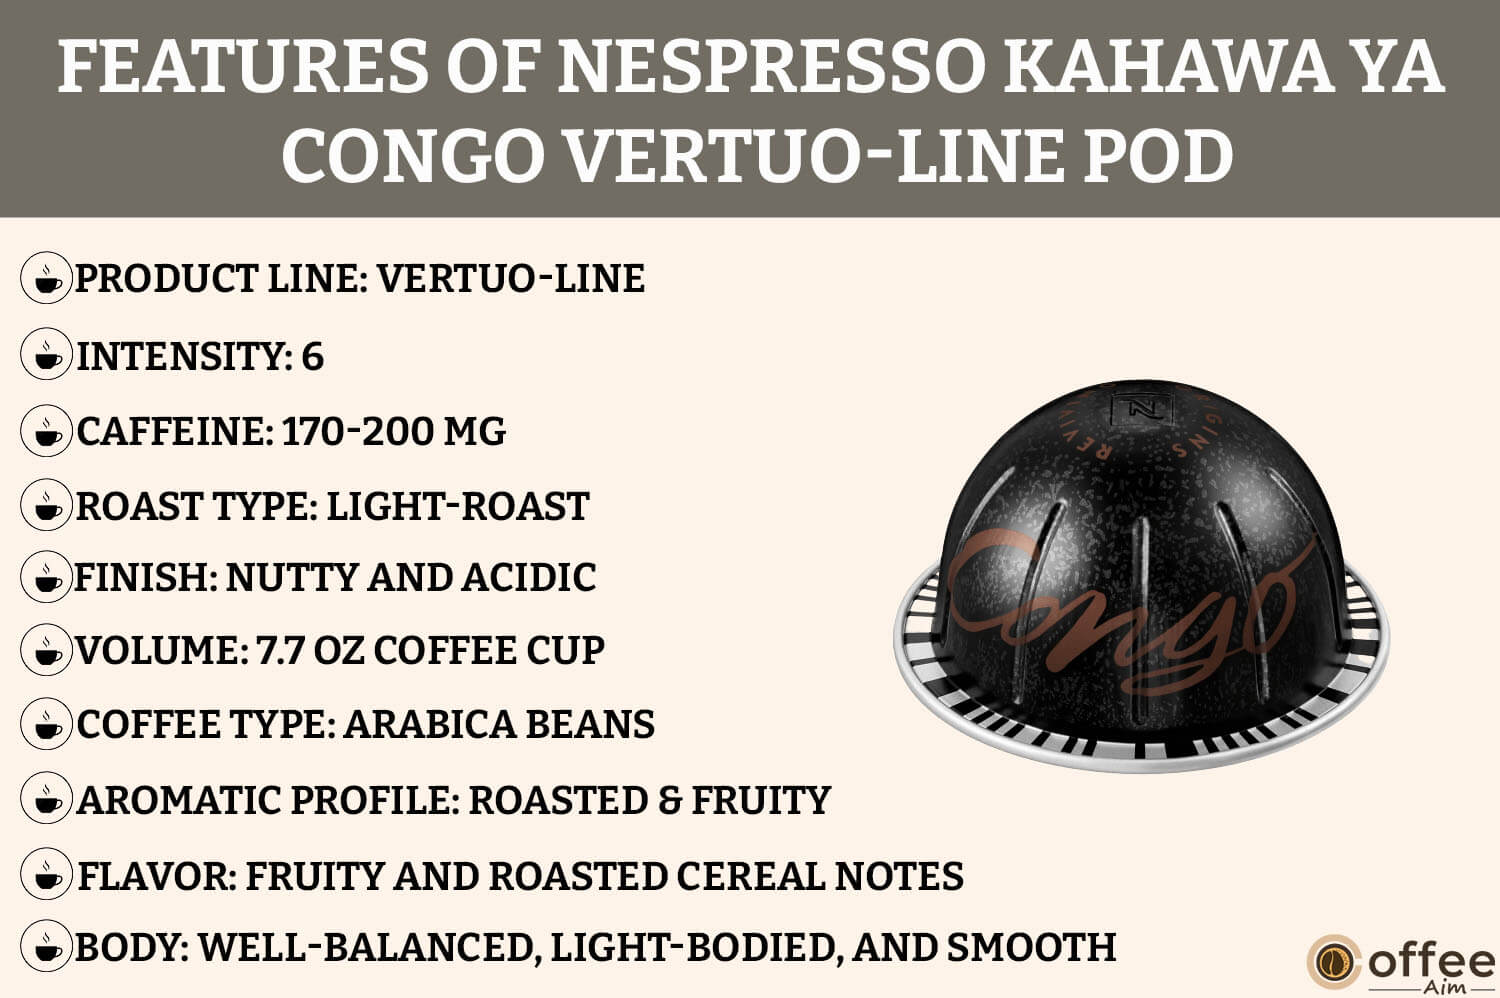 The image details Kahawa Ya Congo VertuoLine Nespresso Pod features for the "Kahawa Ya Congo VertuoLine Nespresso Pod Review" article.